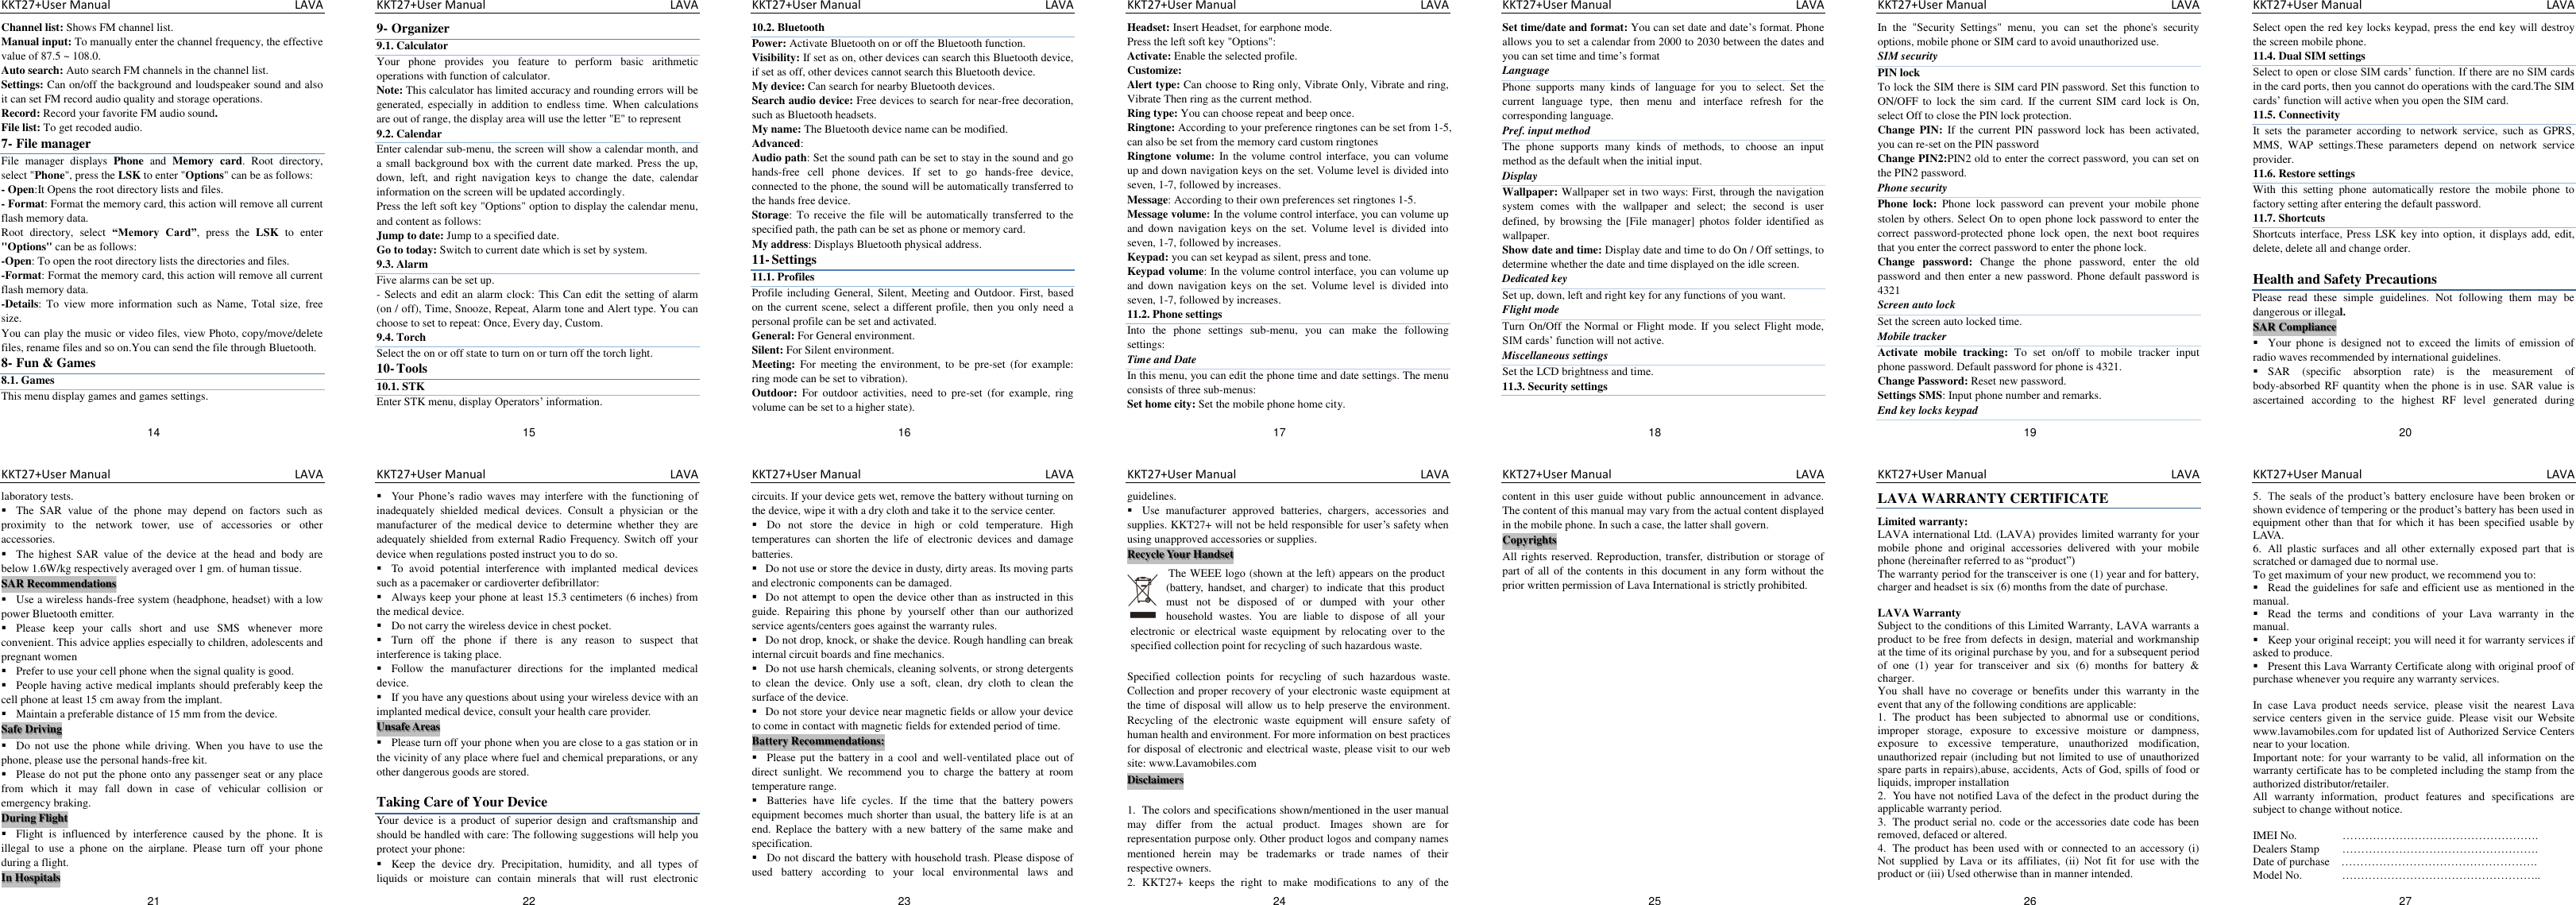 Page 2 of 2 - Lava DF5310 English User Manual 20110315 KKT 27+ - Instruction Kkt27 -en